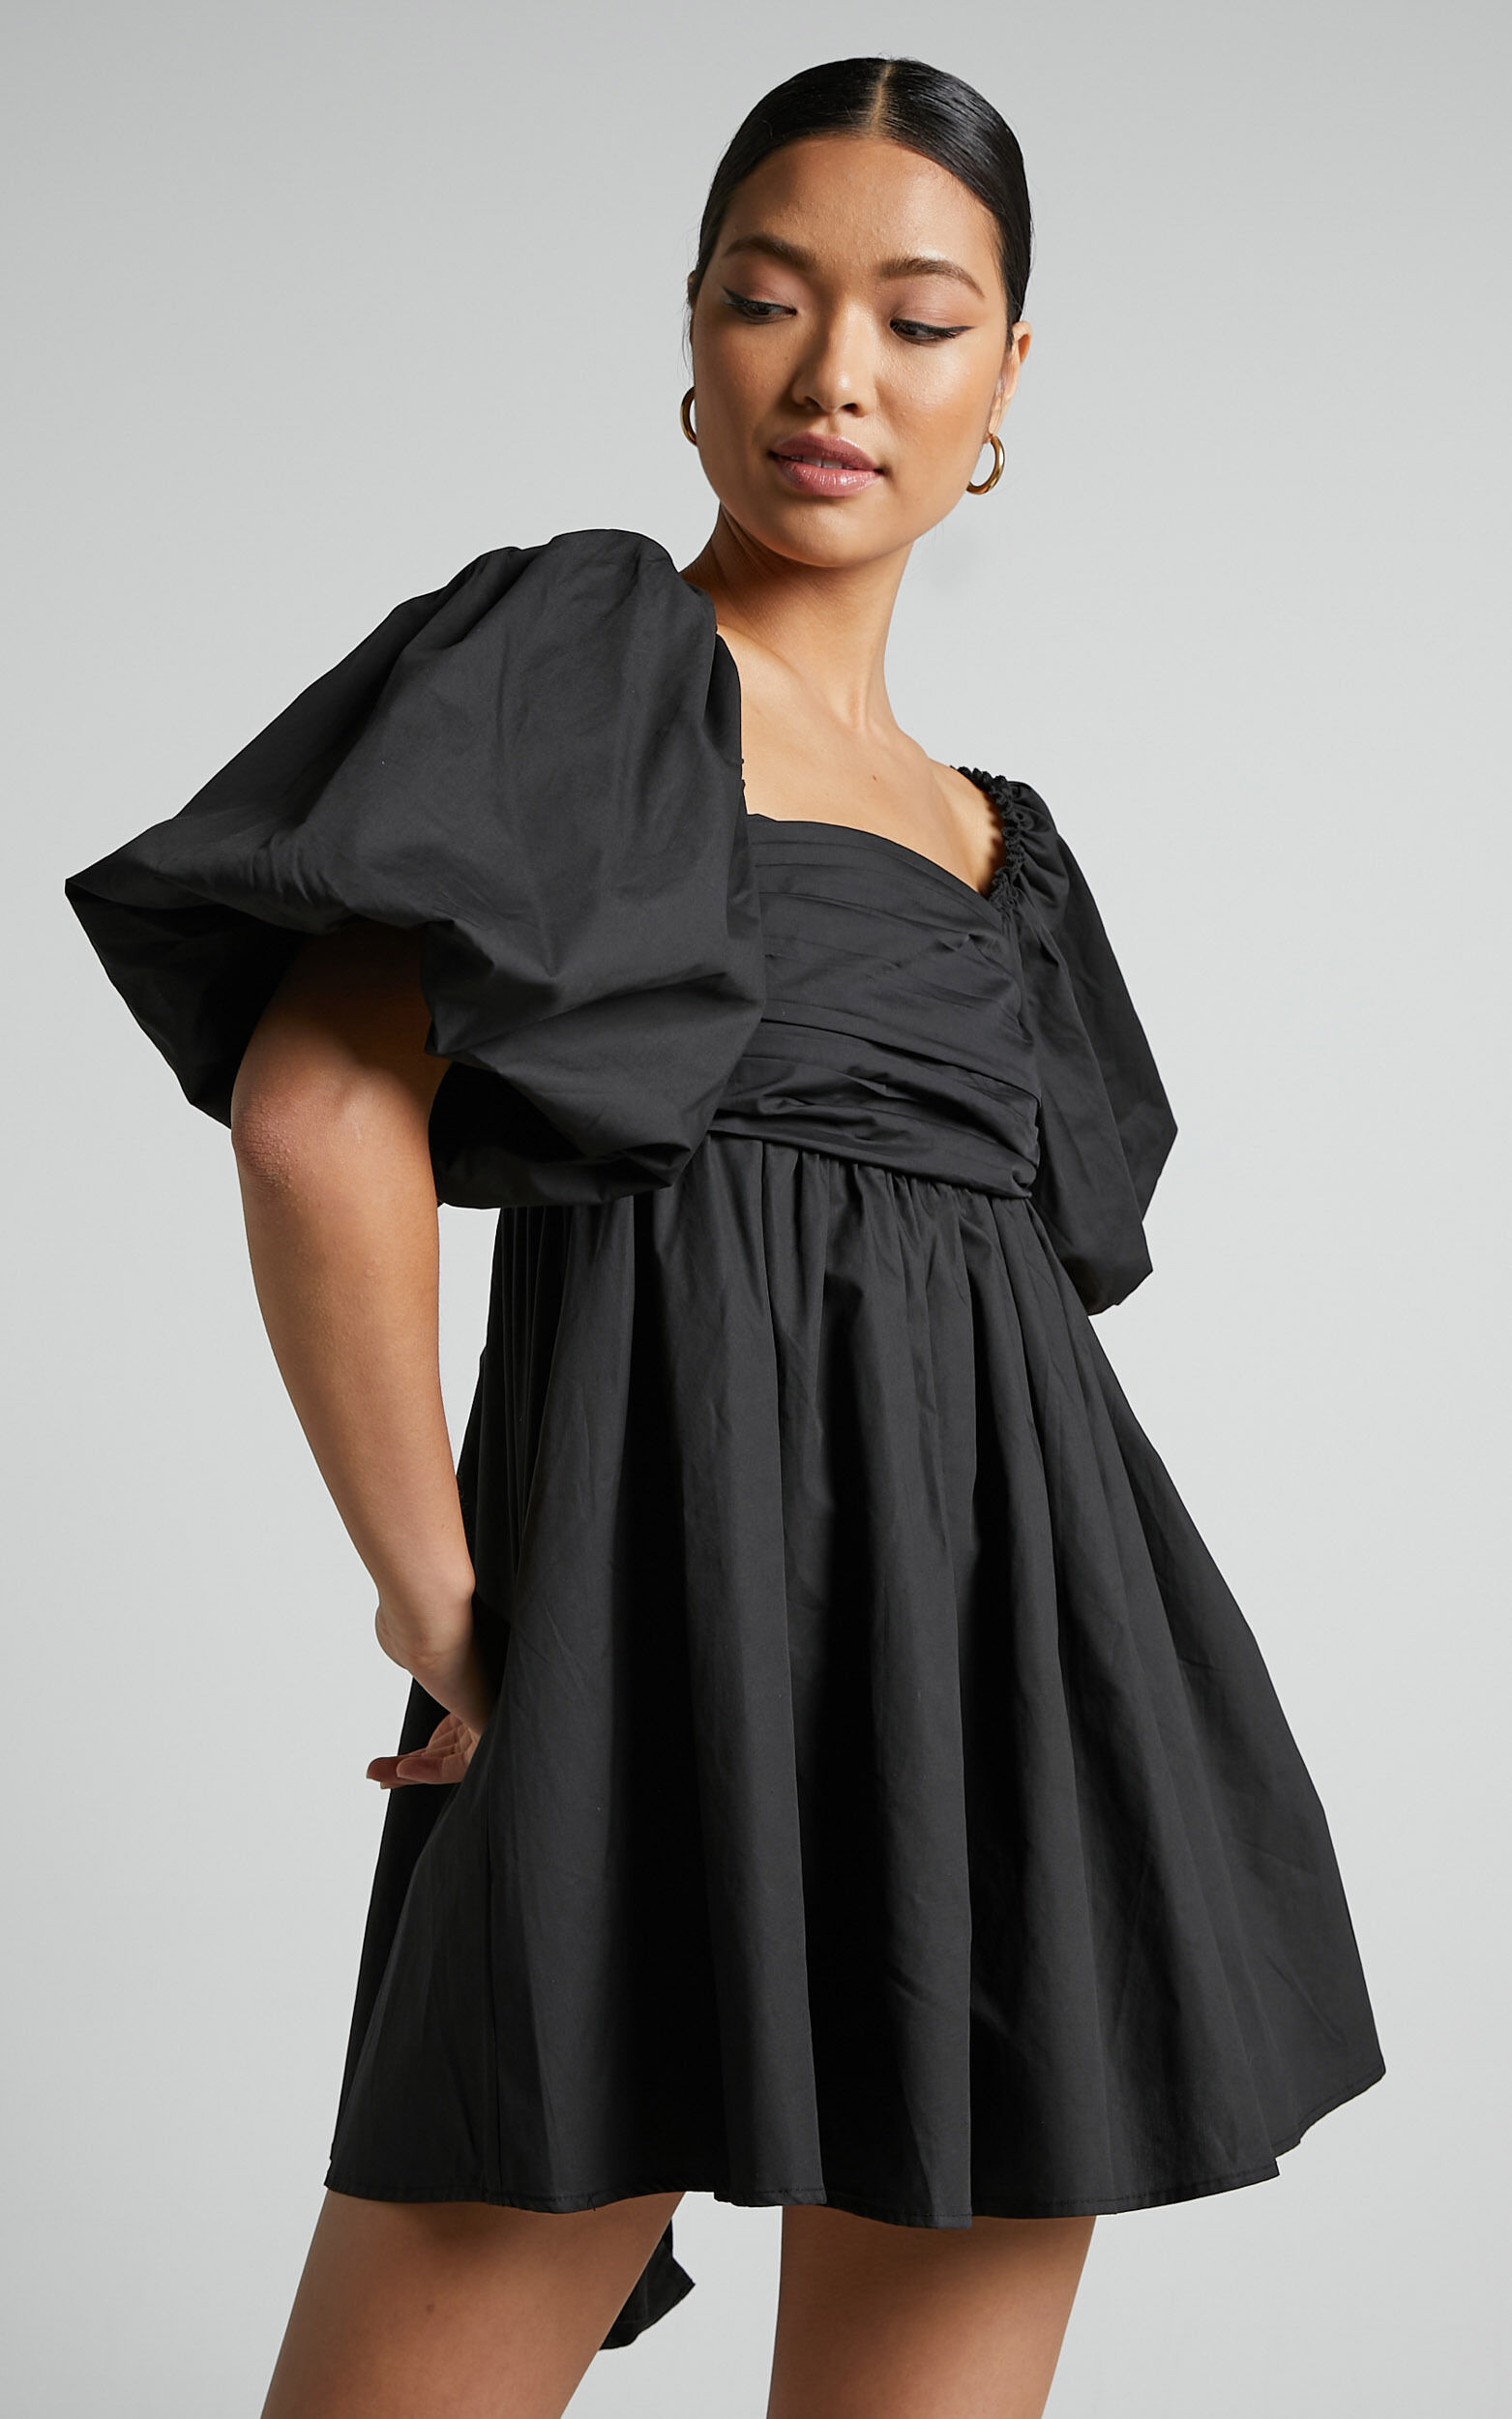 Melony Mini Dress - Cotton Poplin Puff Sleeve Dress in Black - 06, BLK3